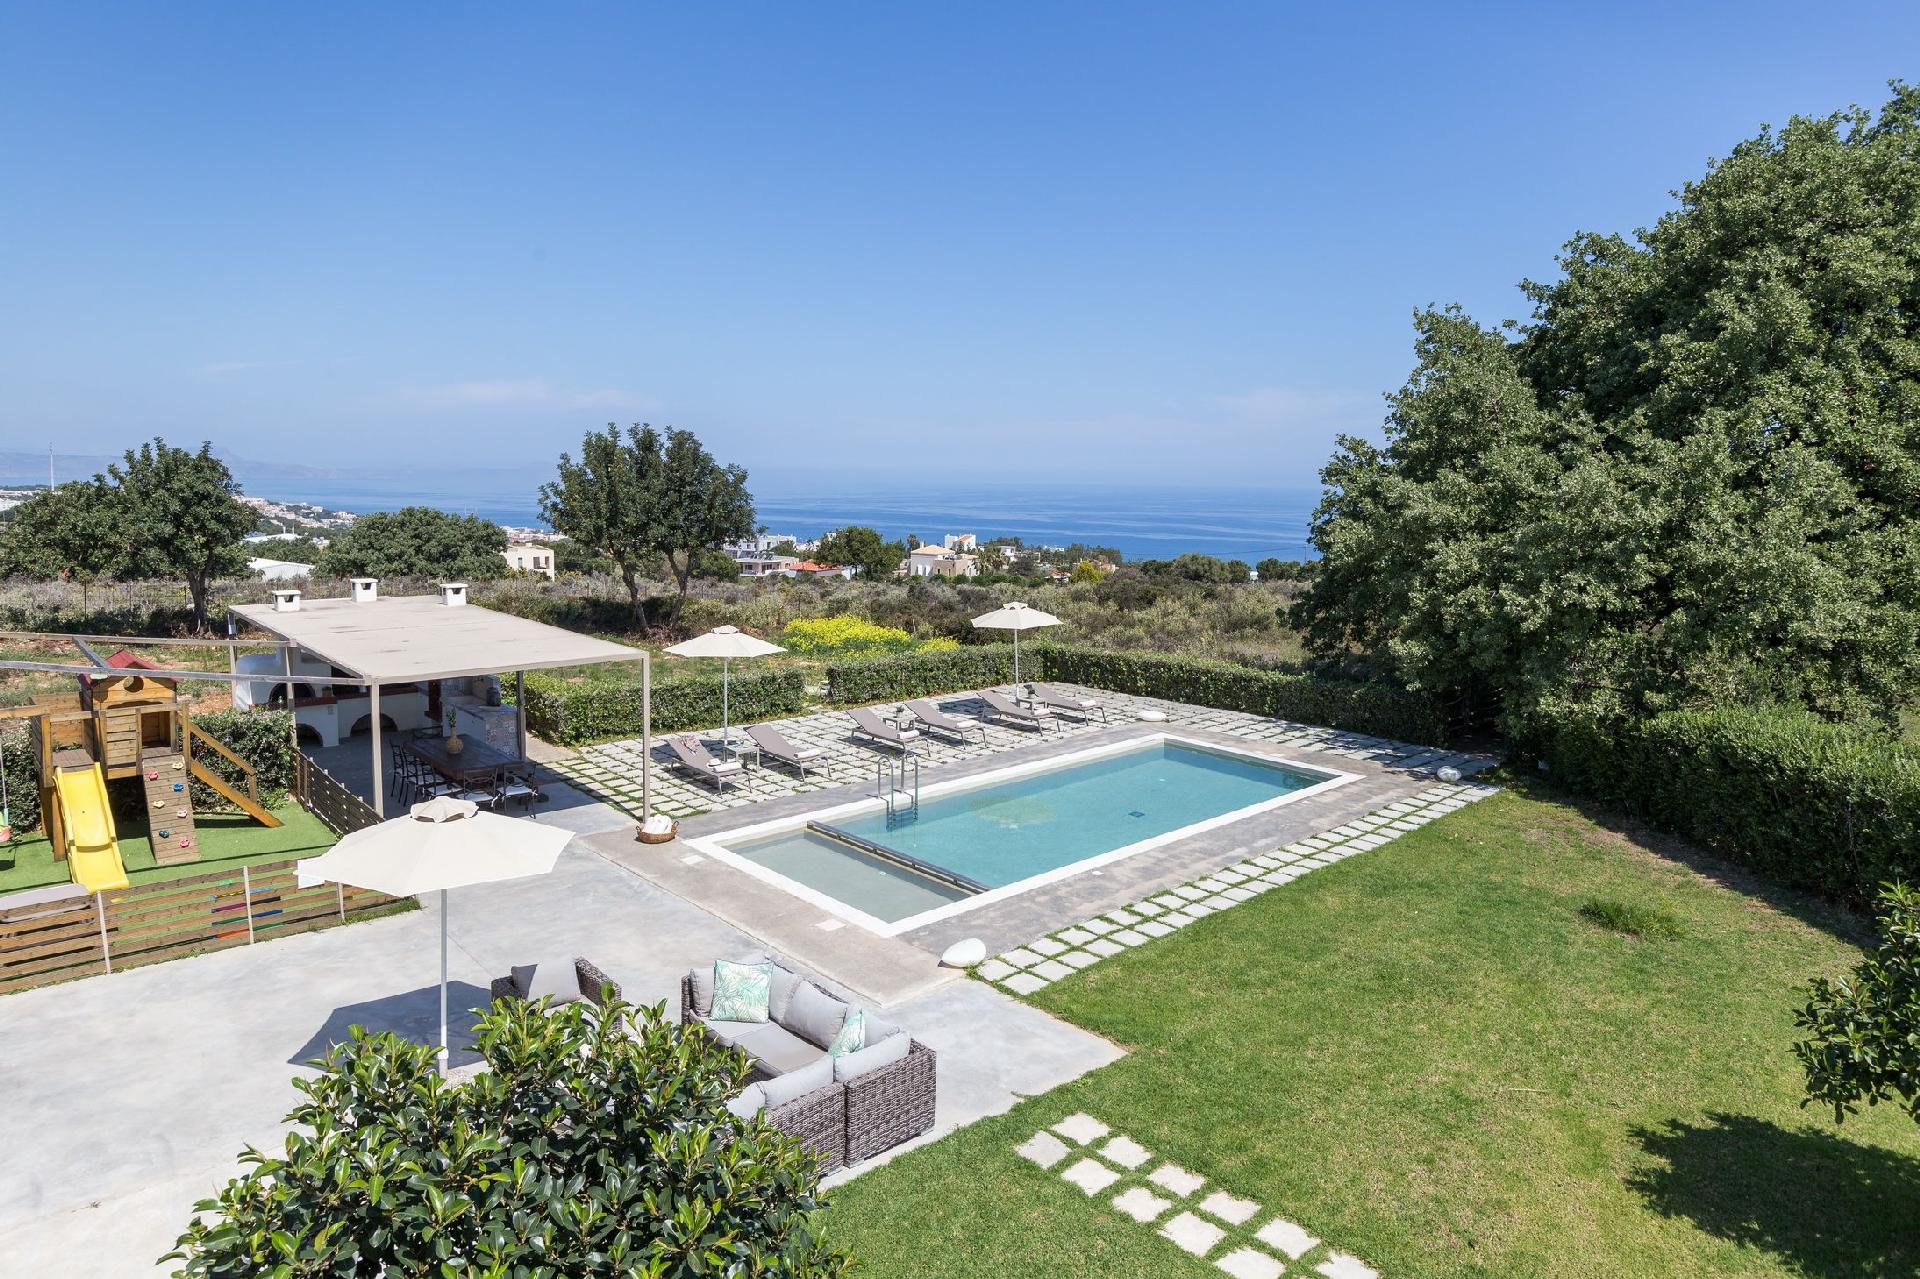 Ferienhaus mit Privatpool für 11 Personen ca. Ferienhaus in Griechenland